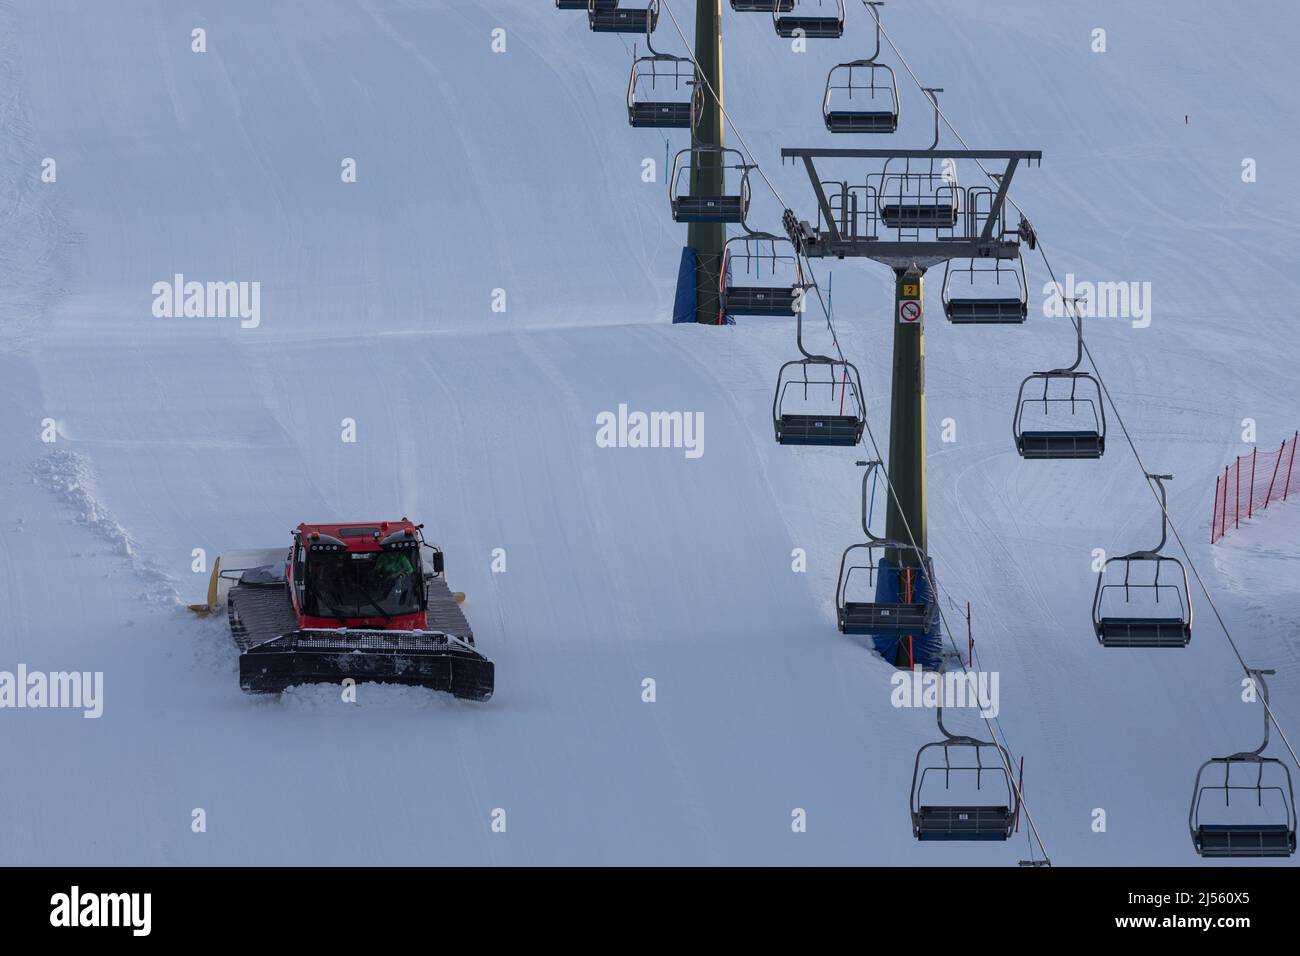 Tondeuse à neige sur la piste de ski de Dolomites, Italie Banque D'Images